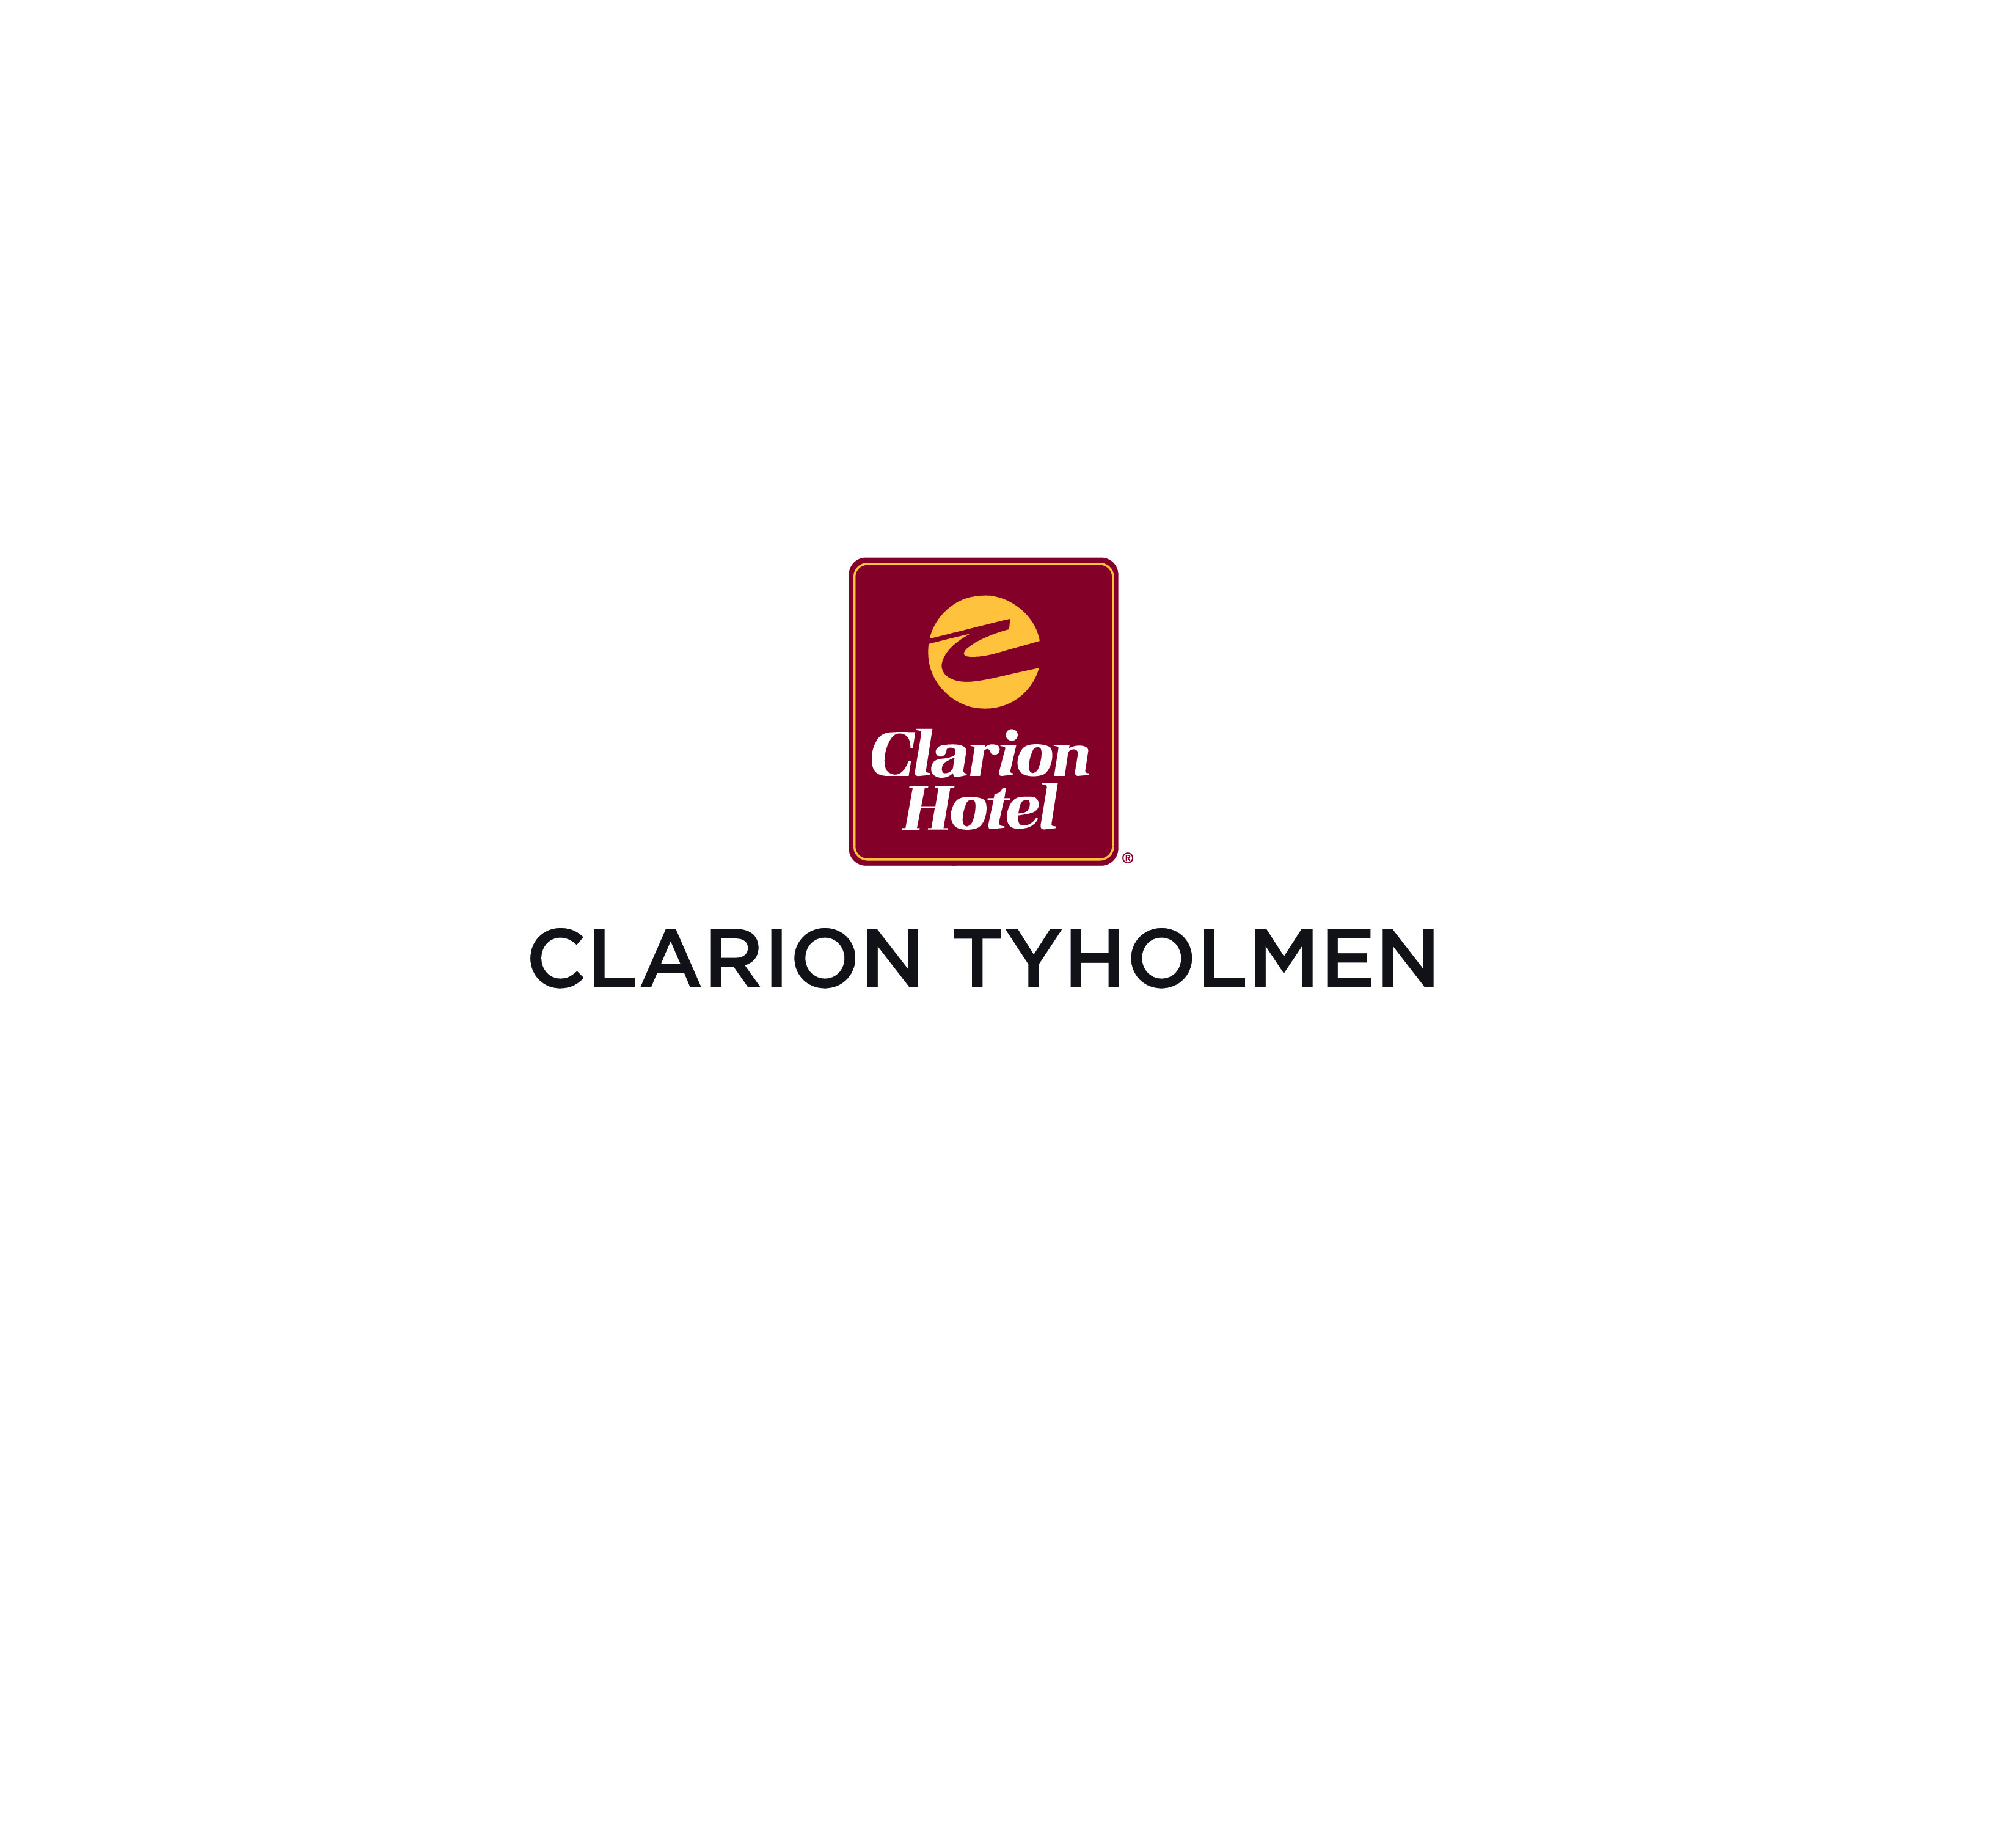 Clarion Tyholmen